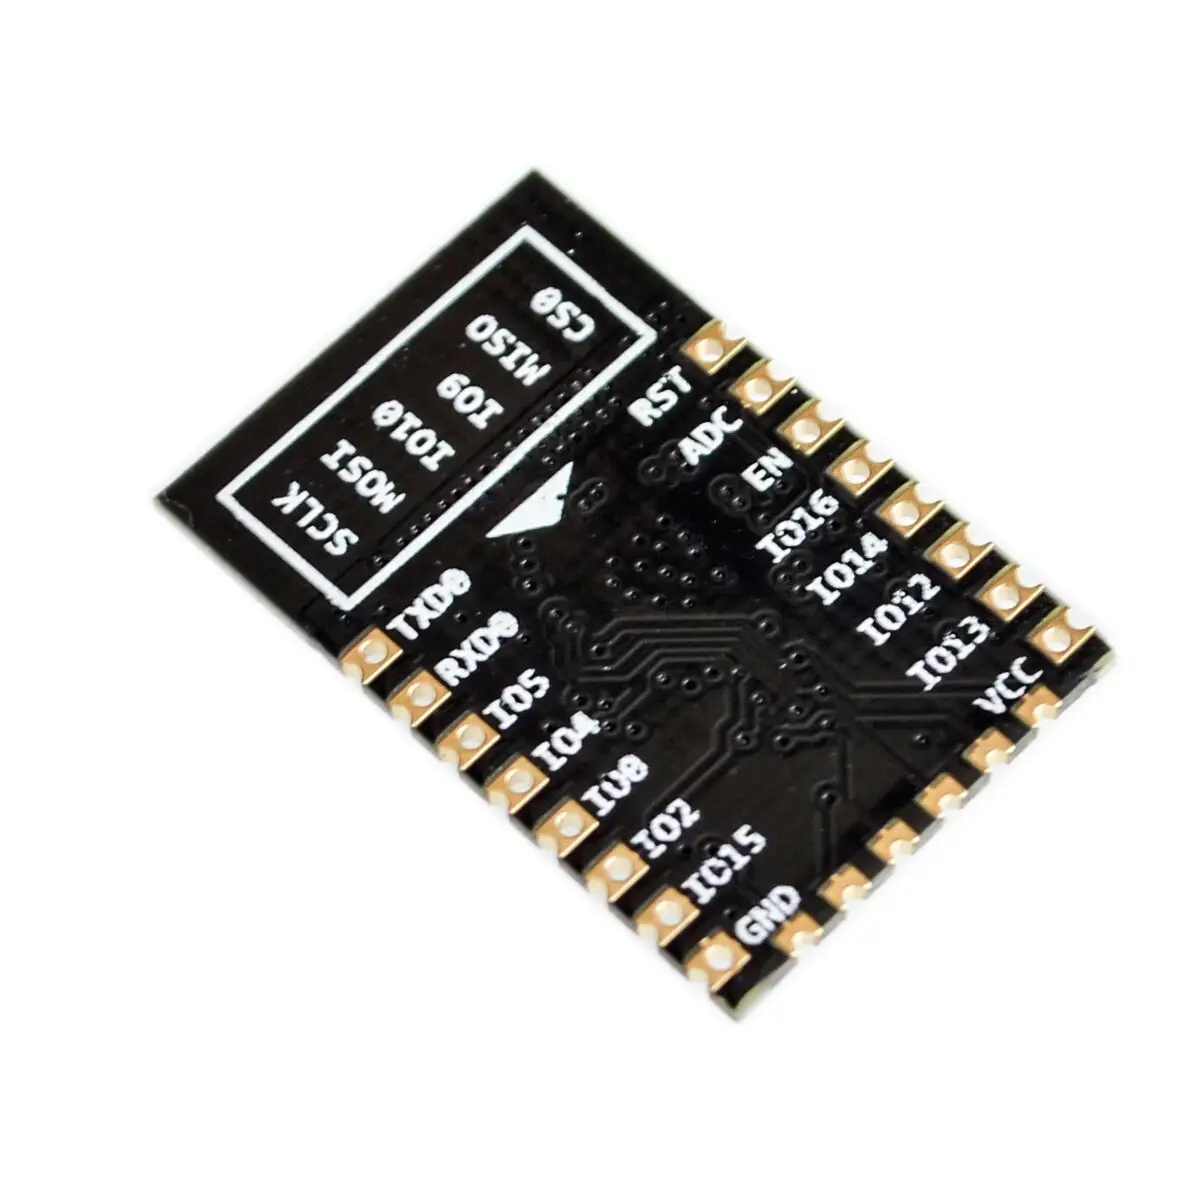 ESP8266 kablosuz seri port modülü IoT geliştirme kurulu ESP-12F uzaktan WİFİ kontrolü